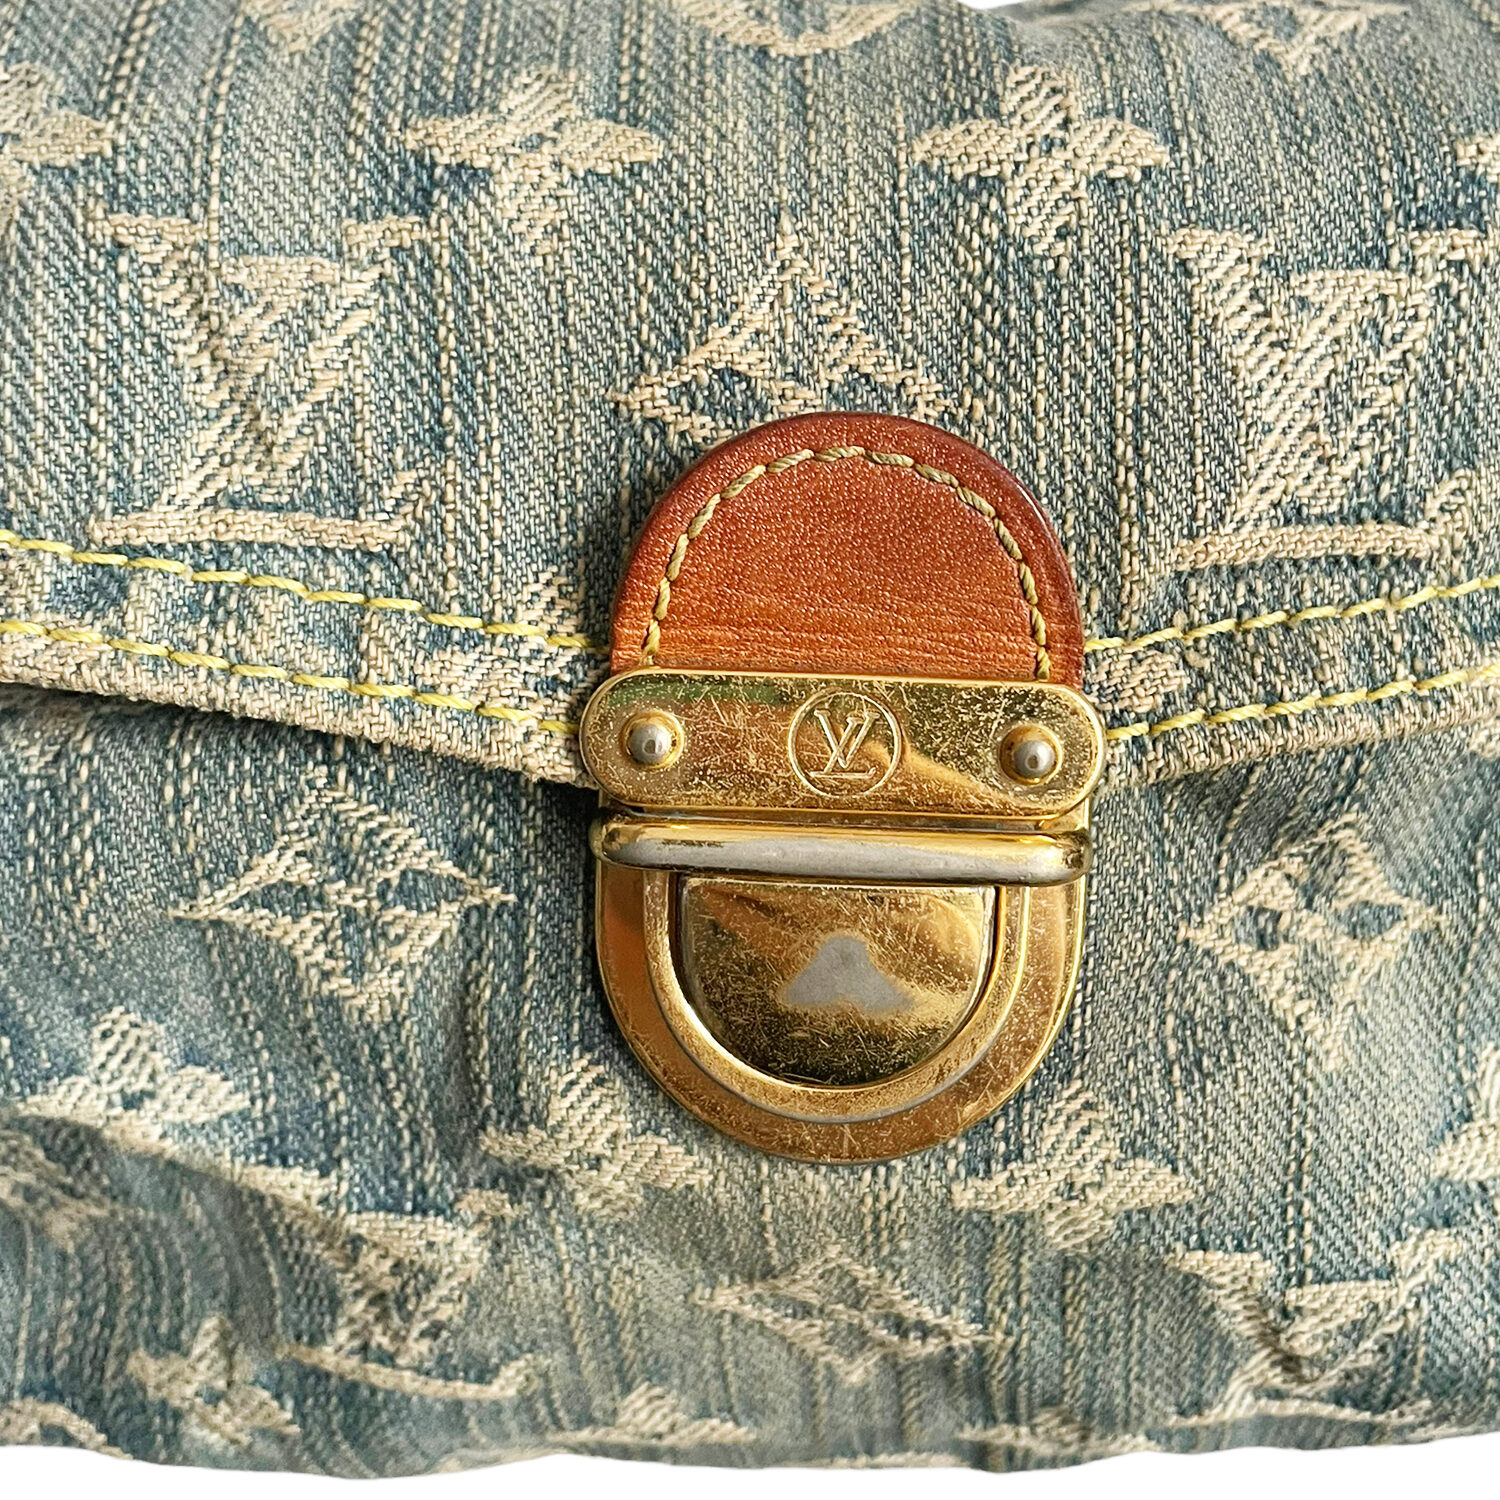 Pleaty handbag Louis Vuitton Blue in Denim - Jeans - 35929809